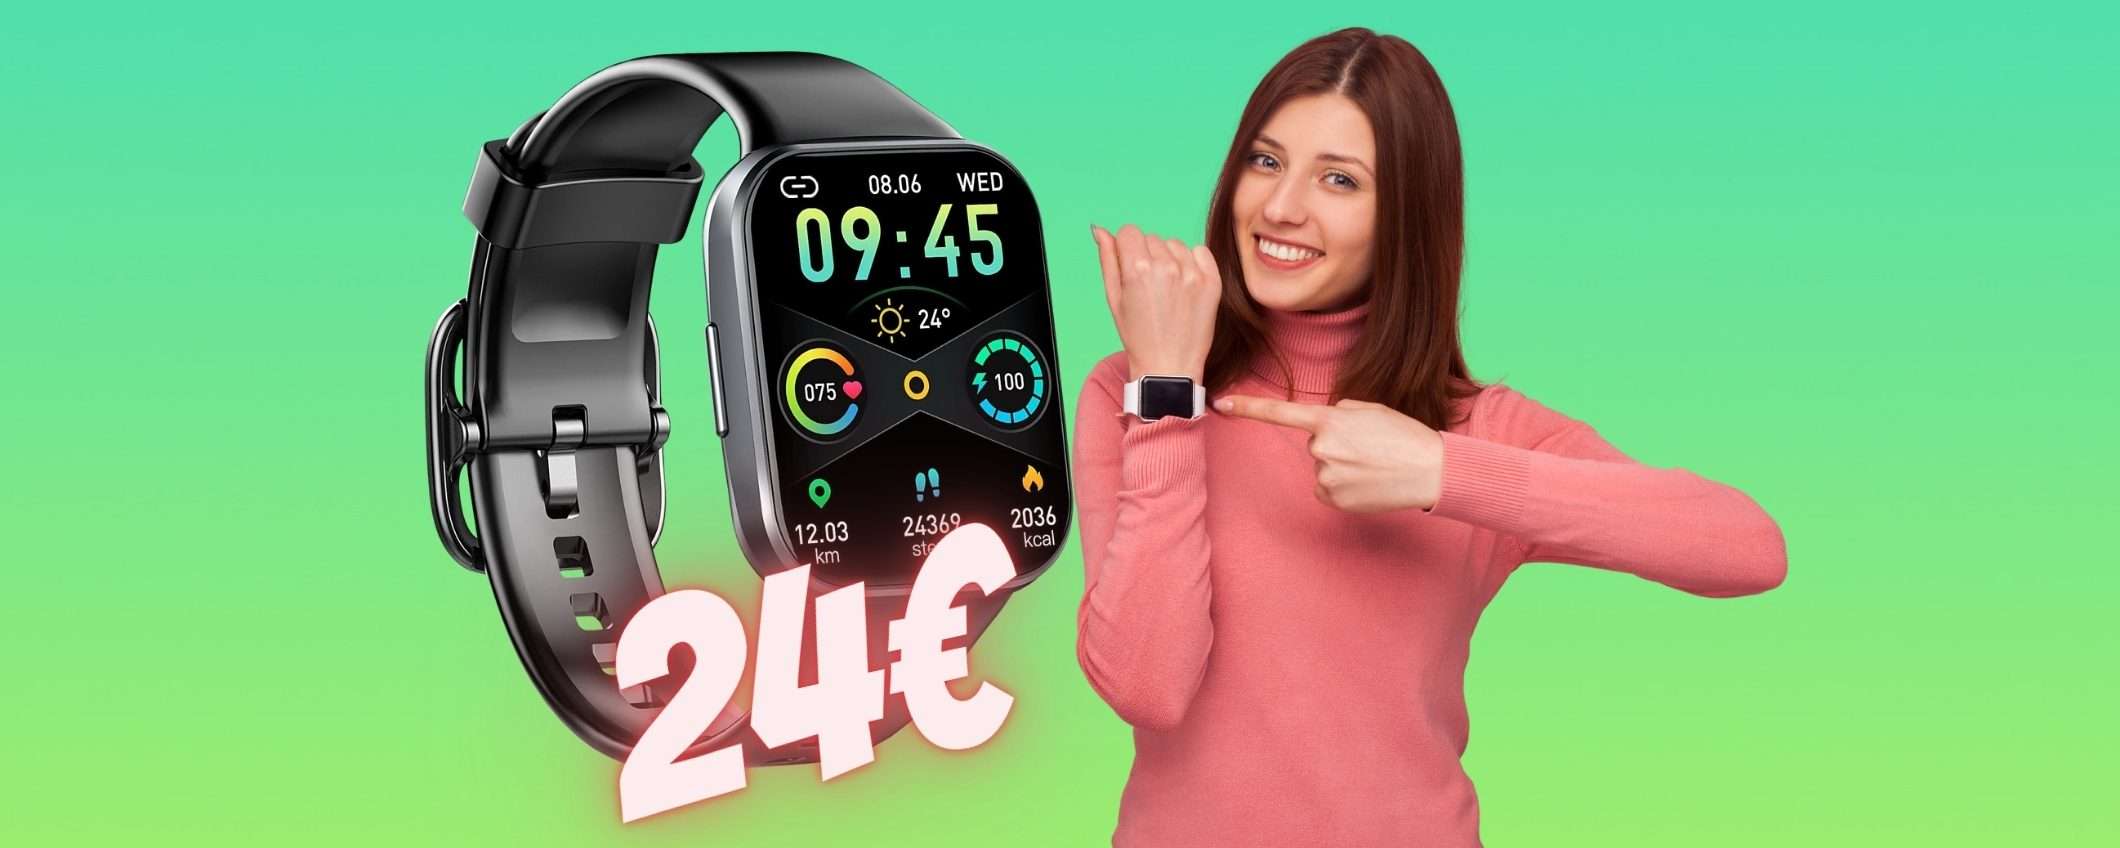 Appena 24€ per uno smartwatch con 25 modalità sportive e IP68 (-66%)